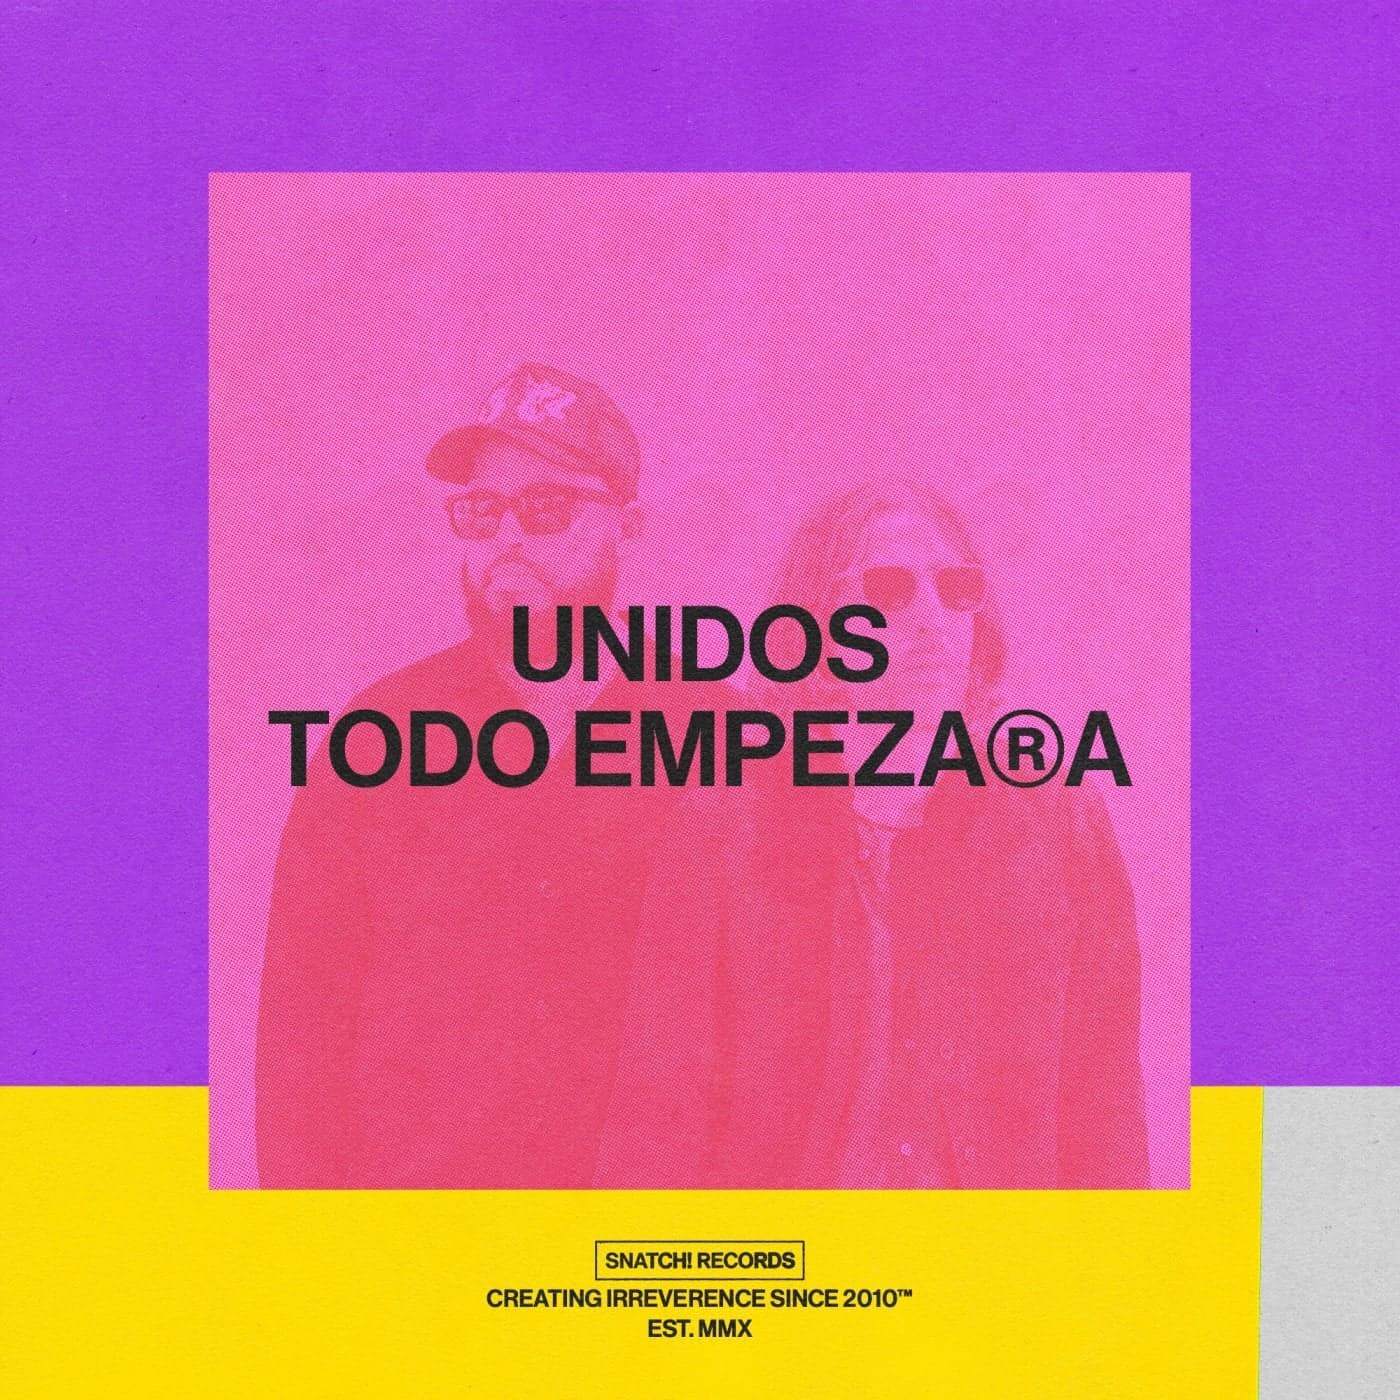 Download Unidos - Todo Empezara EP on Electrobuzz